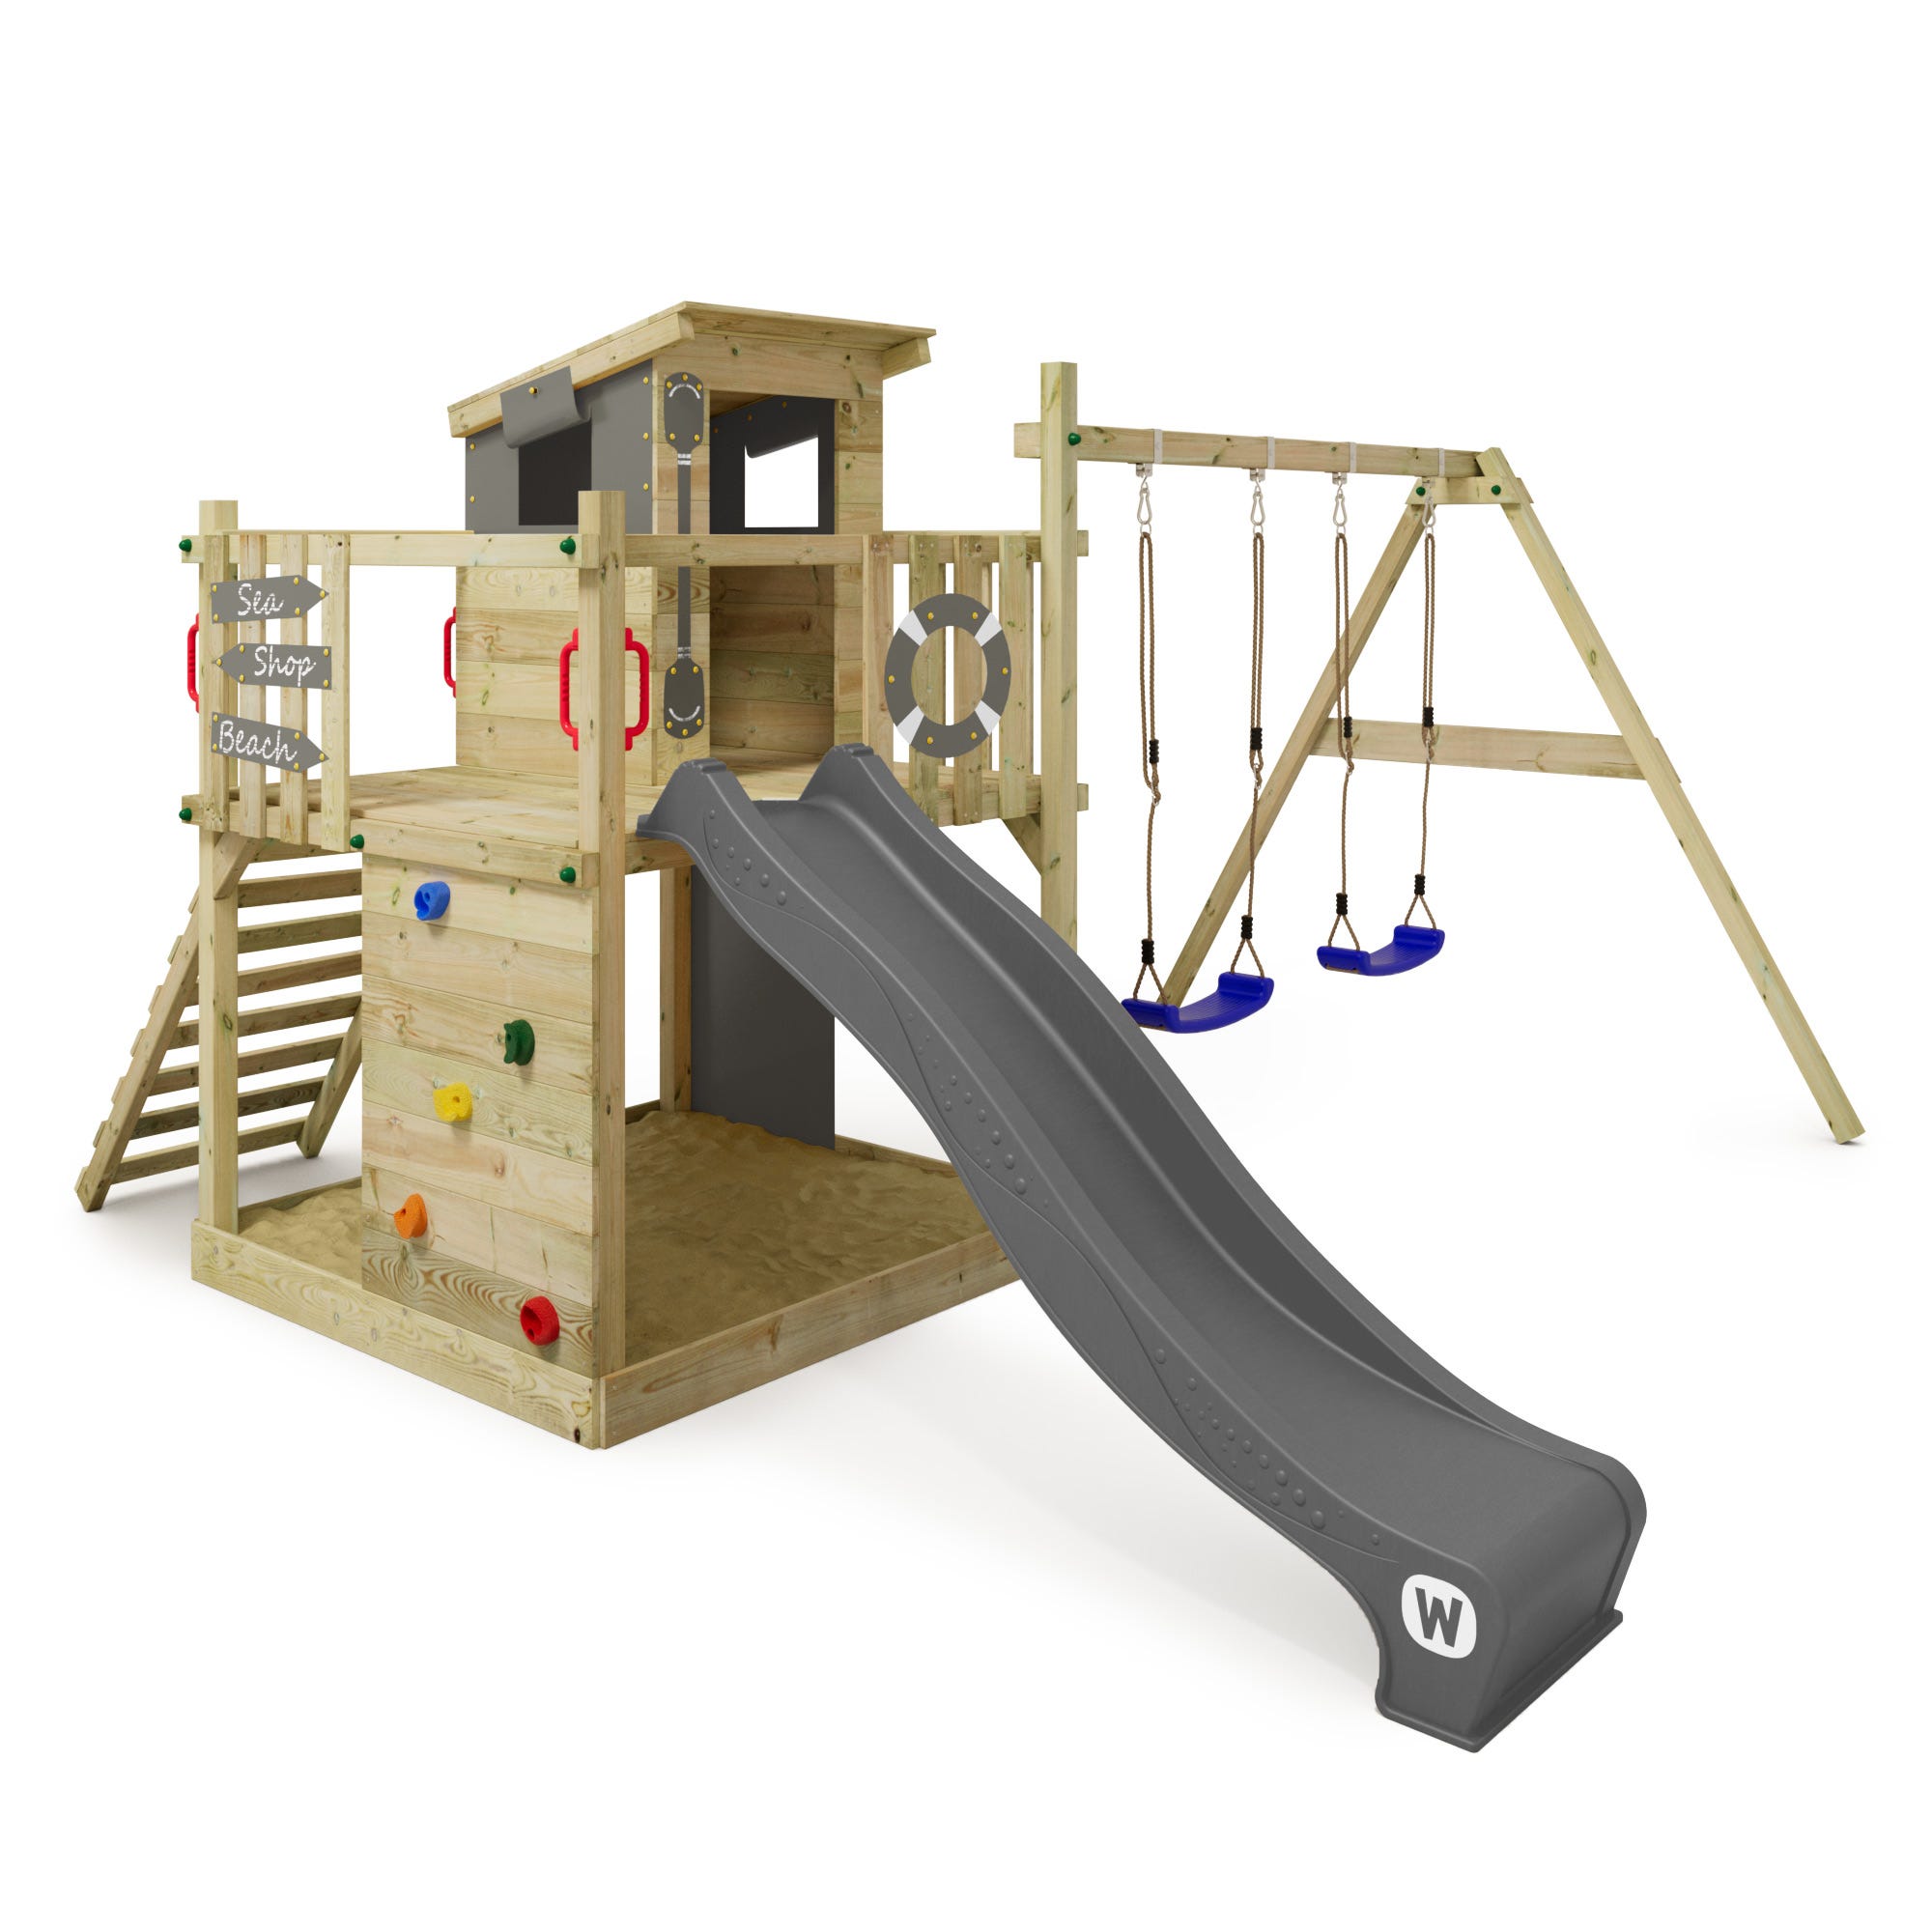 Wickey Aire de jeux Portique bois Smart Camp avec balançoire et toboggan  Cabane enfant exterieur avec bac à sable & échelle d'escalade - anthracite